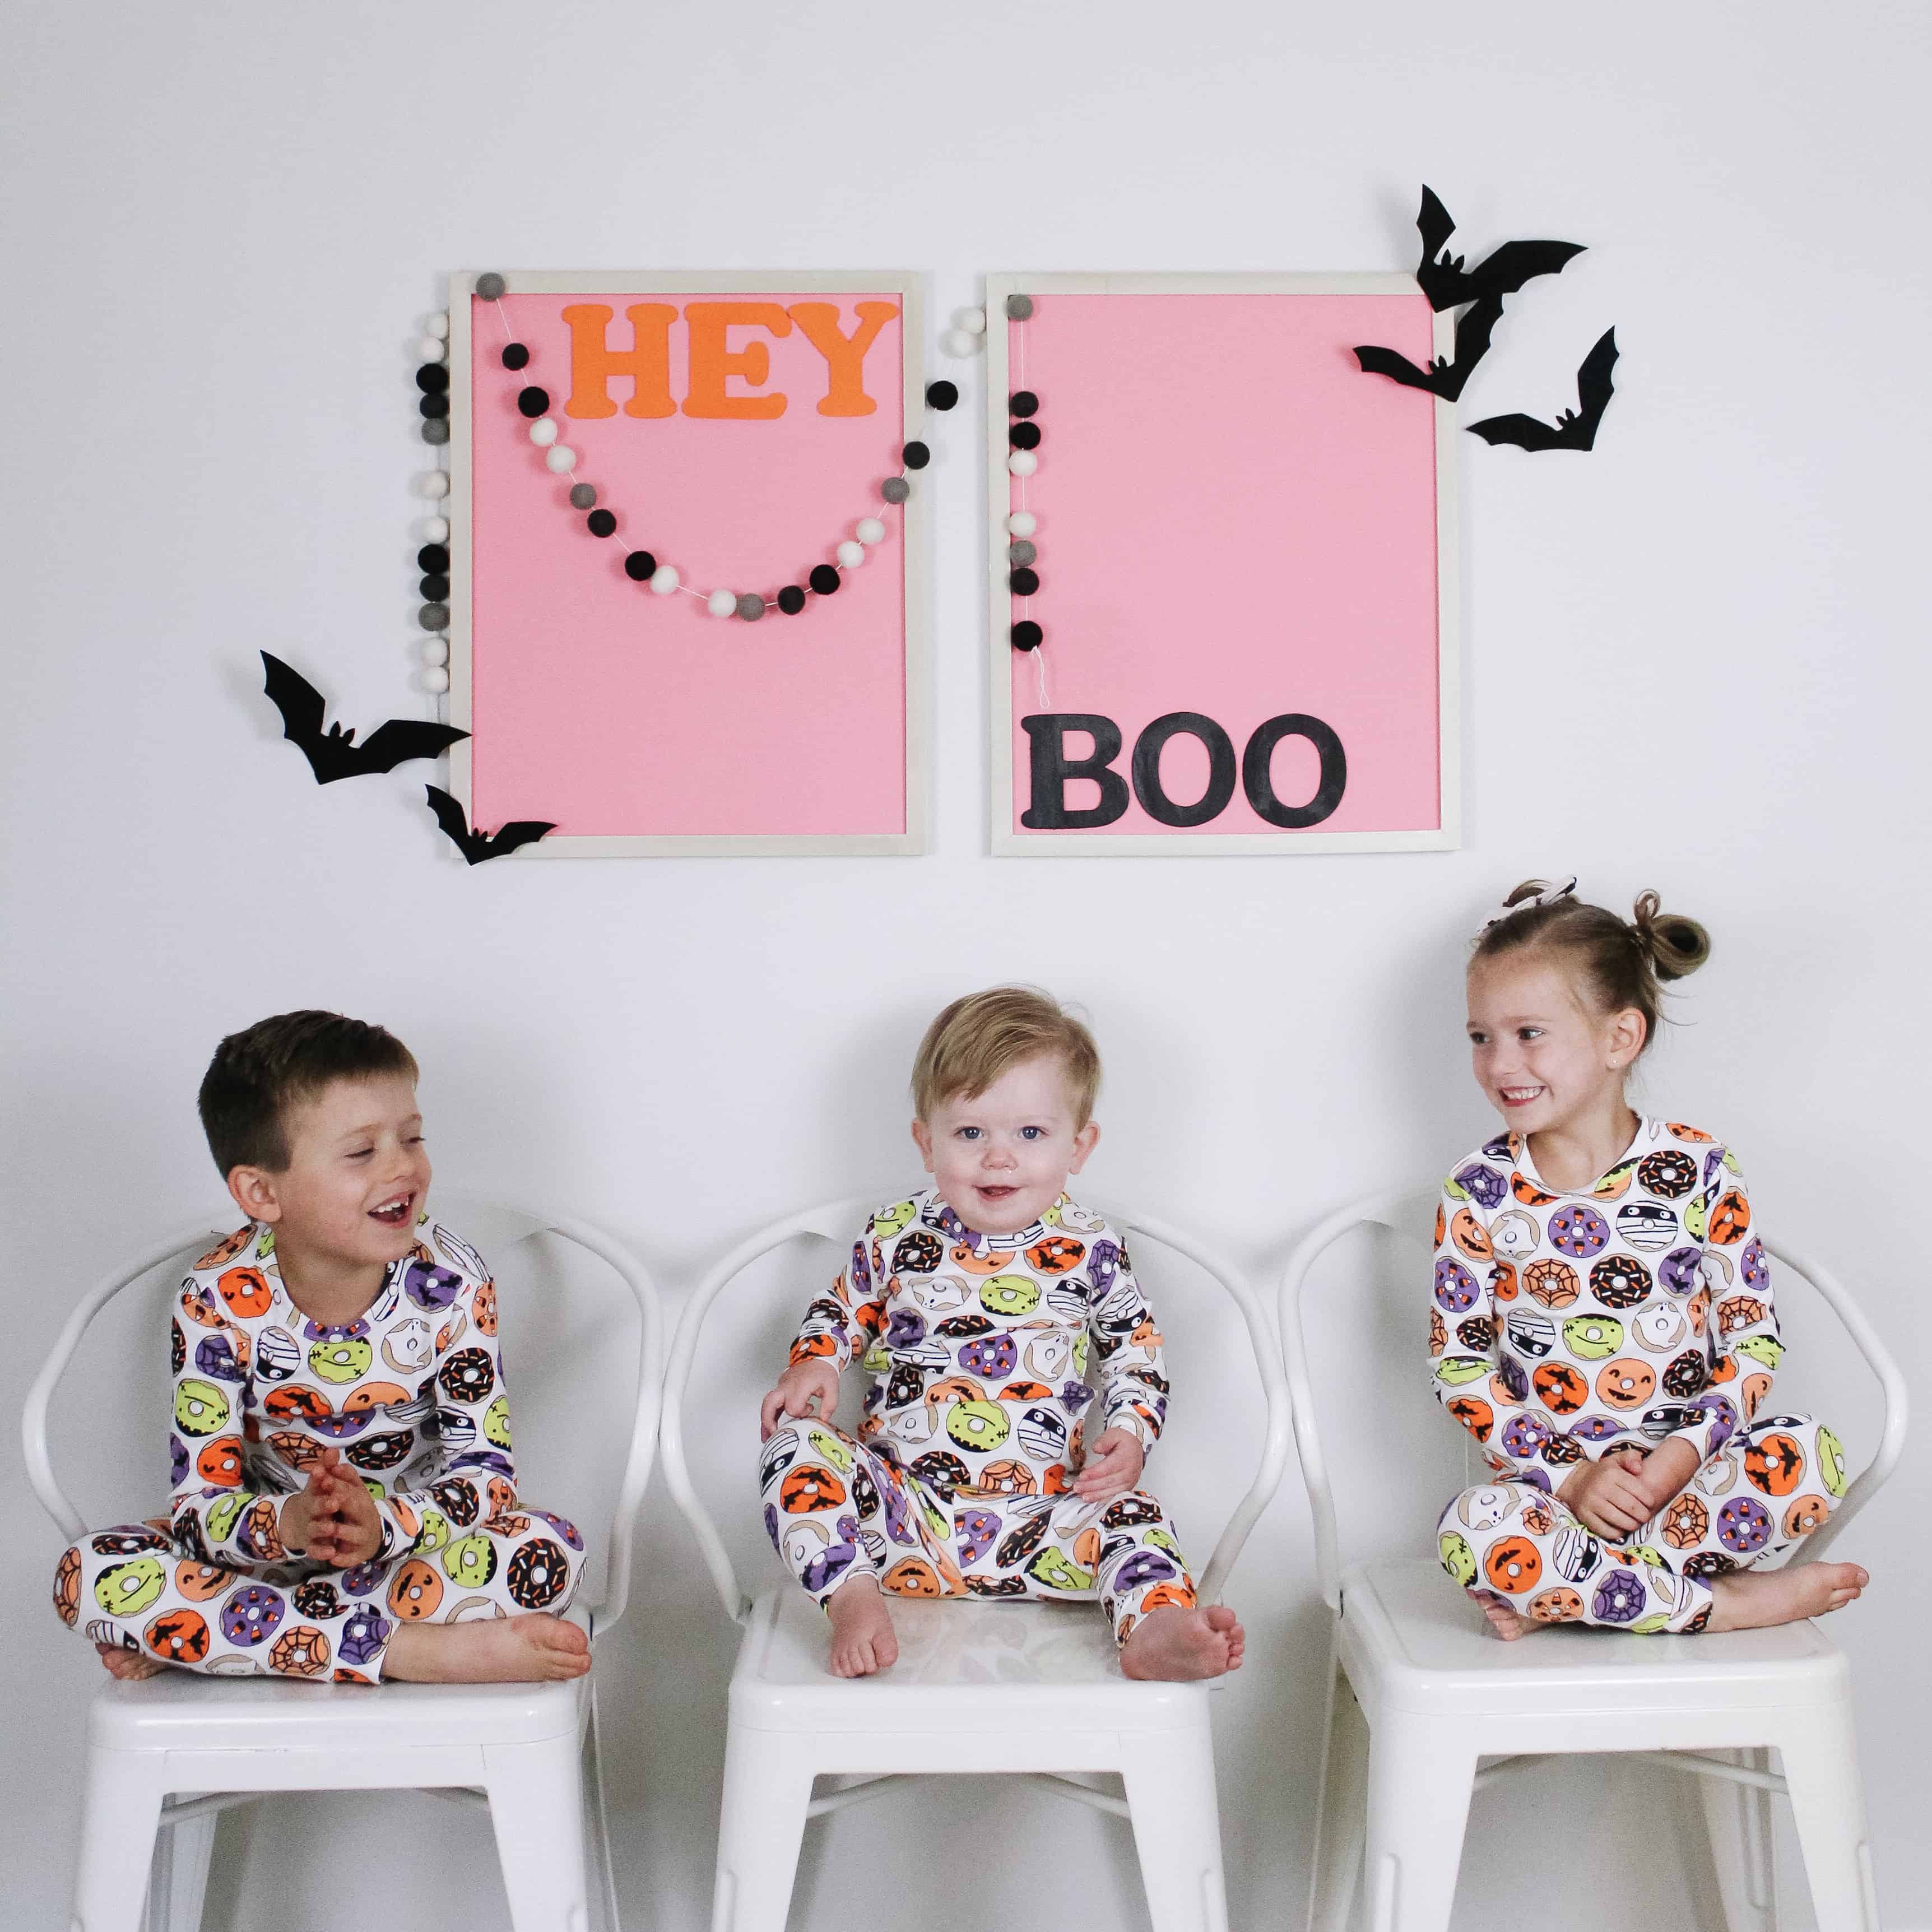 3 kids in matching halloween pajamas